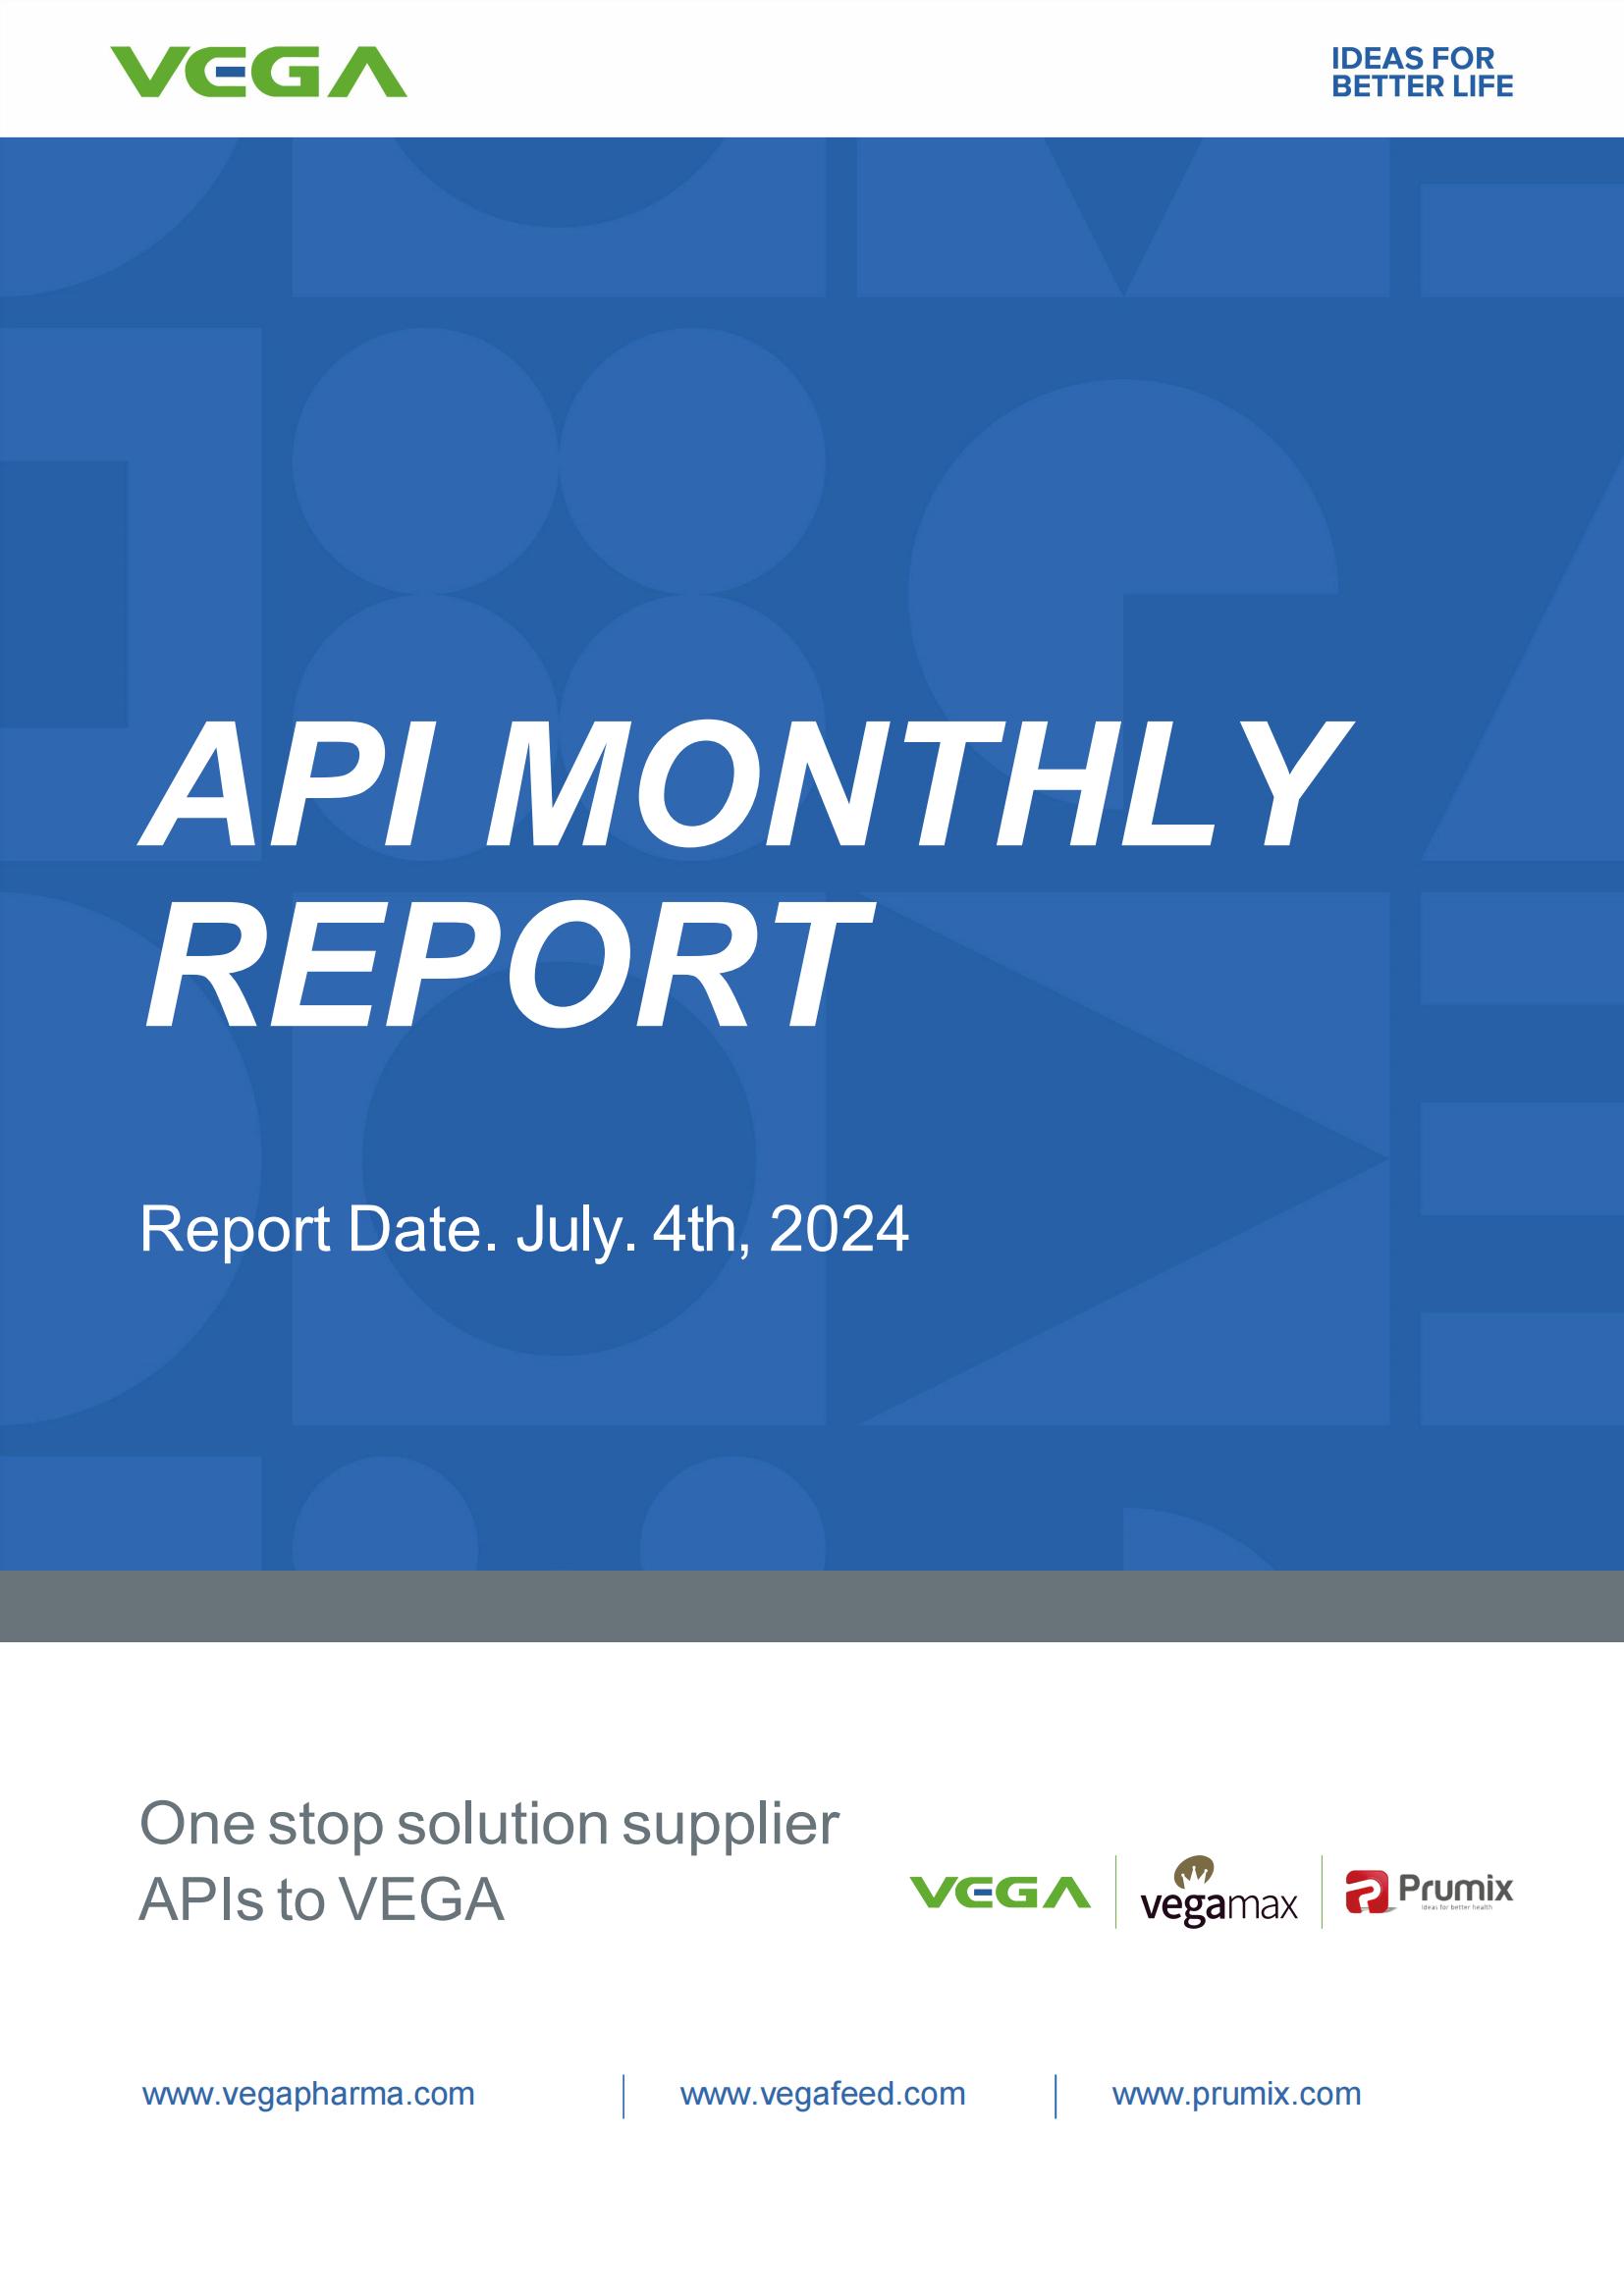 API Market Monthly Report Jun 2024 From VEGA_00.jpg